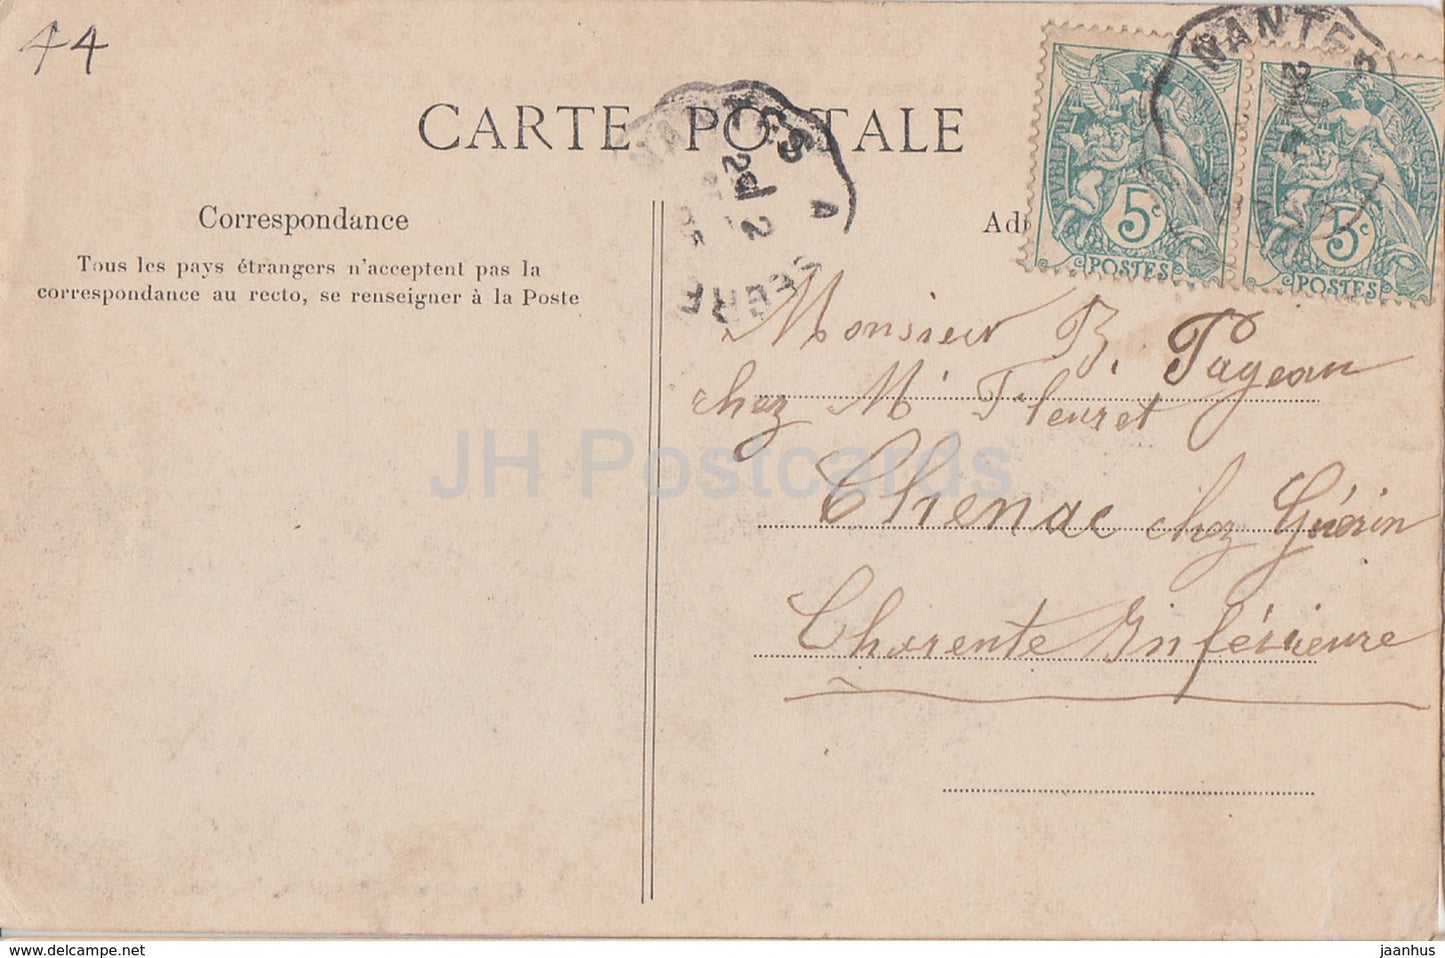 Le Cellier - Château de Clermont - château - carte postale ancienne - 1905 - France - utilisé